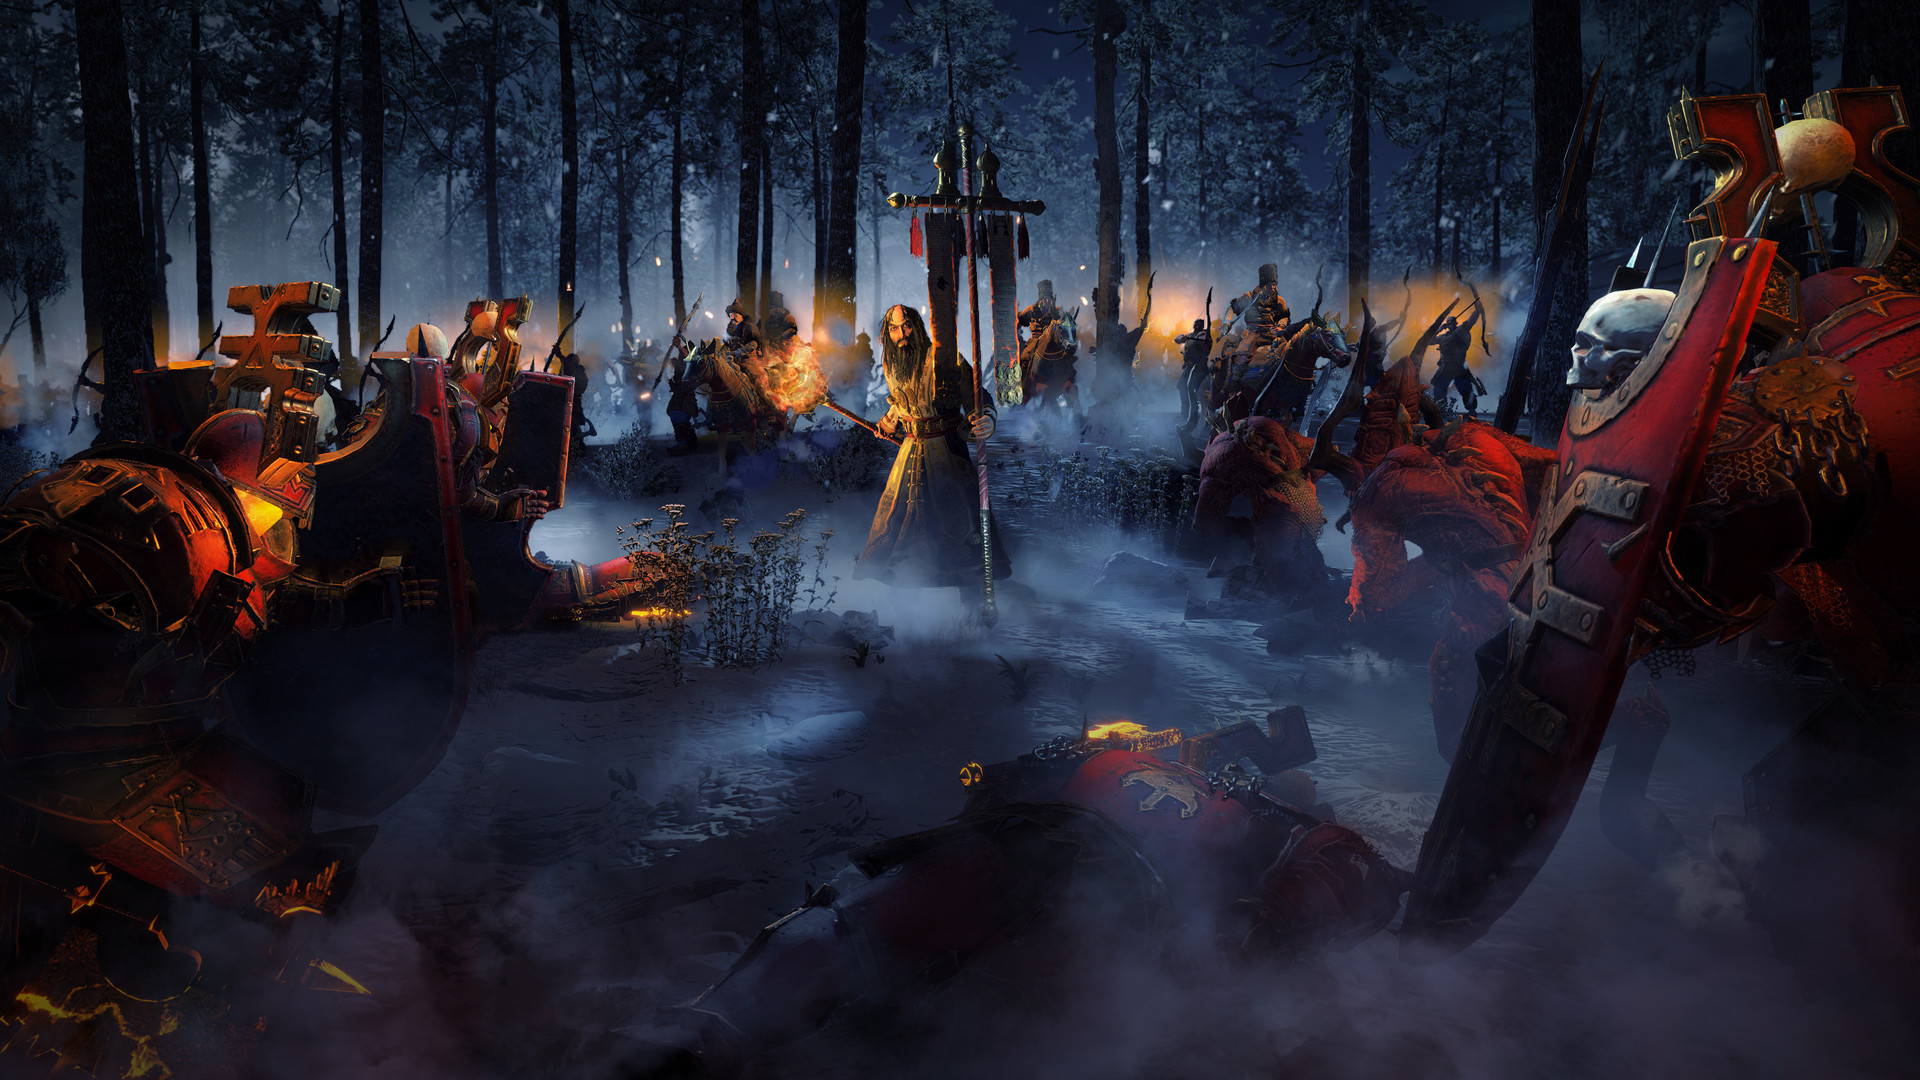 Total War: WARHAMMER III on Steam